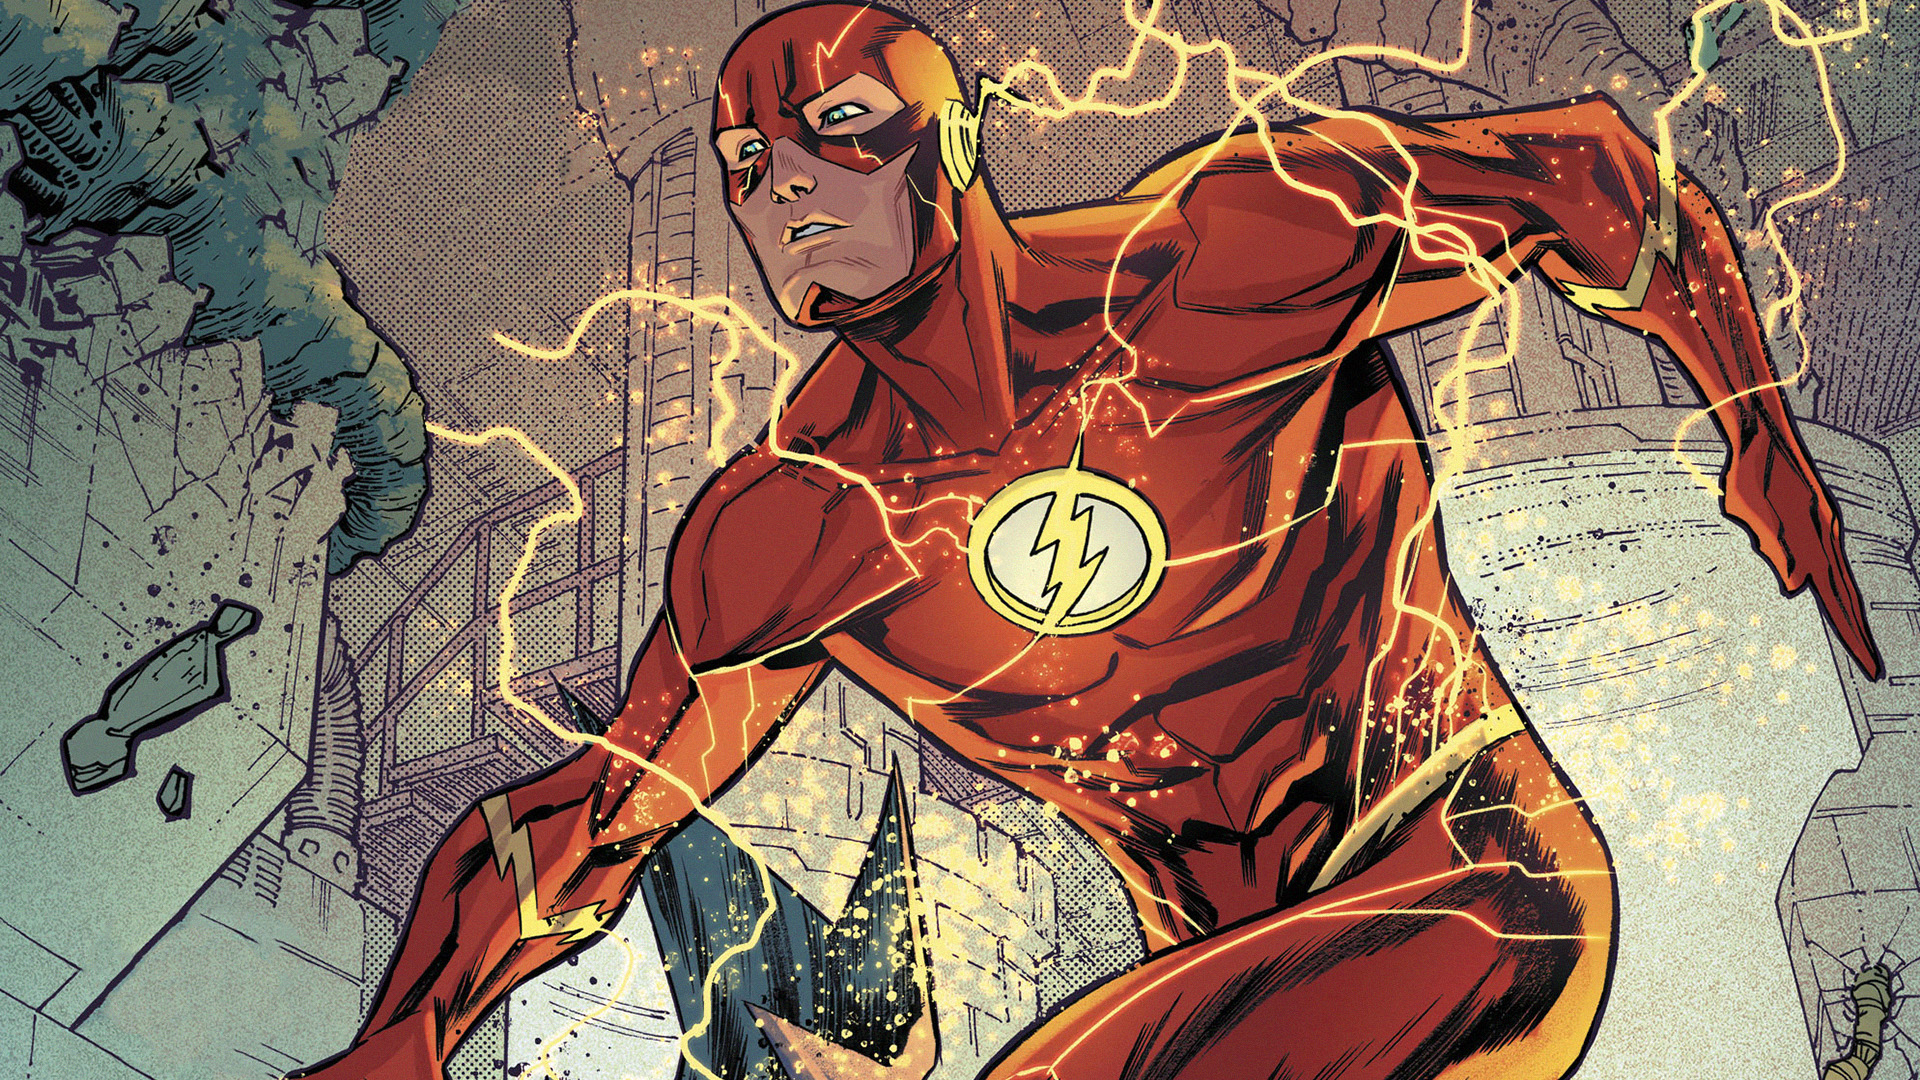 Barry Allen Dc Comics Flash Justice League 1920x1080